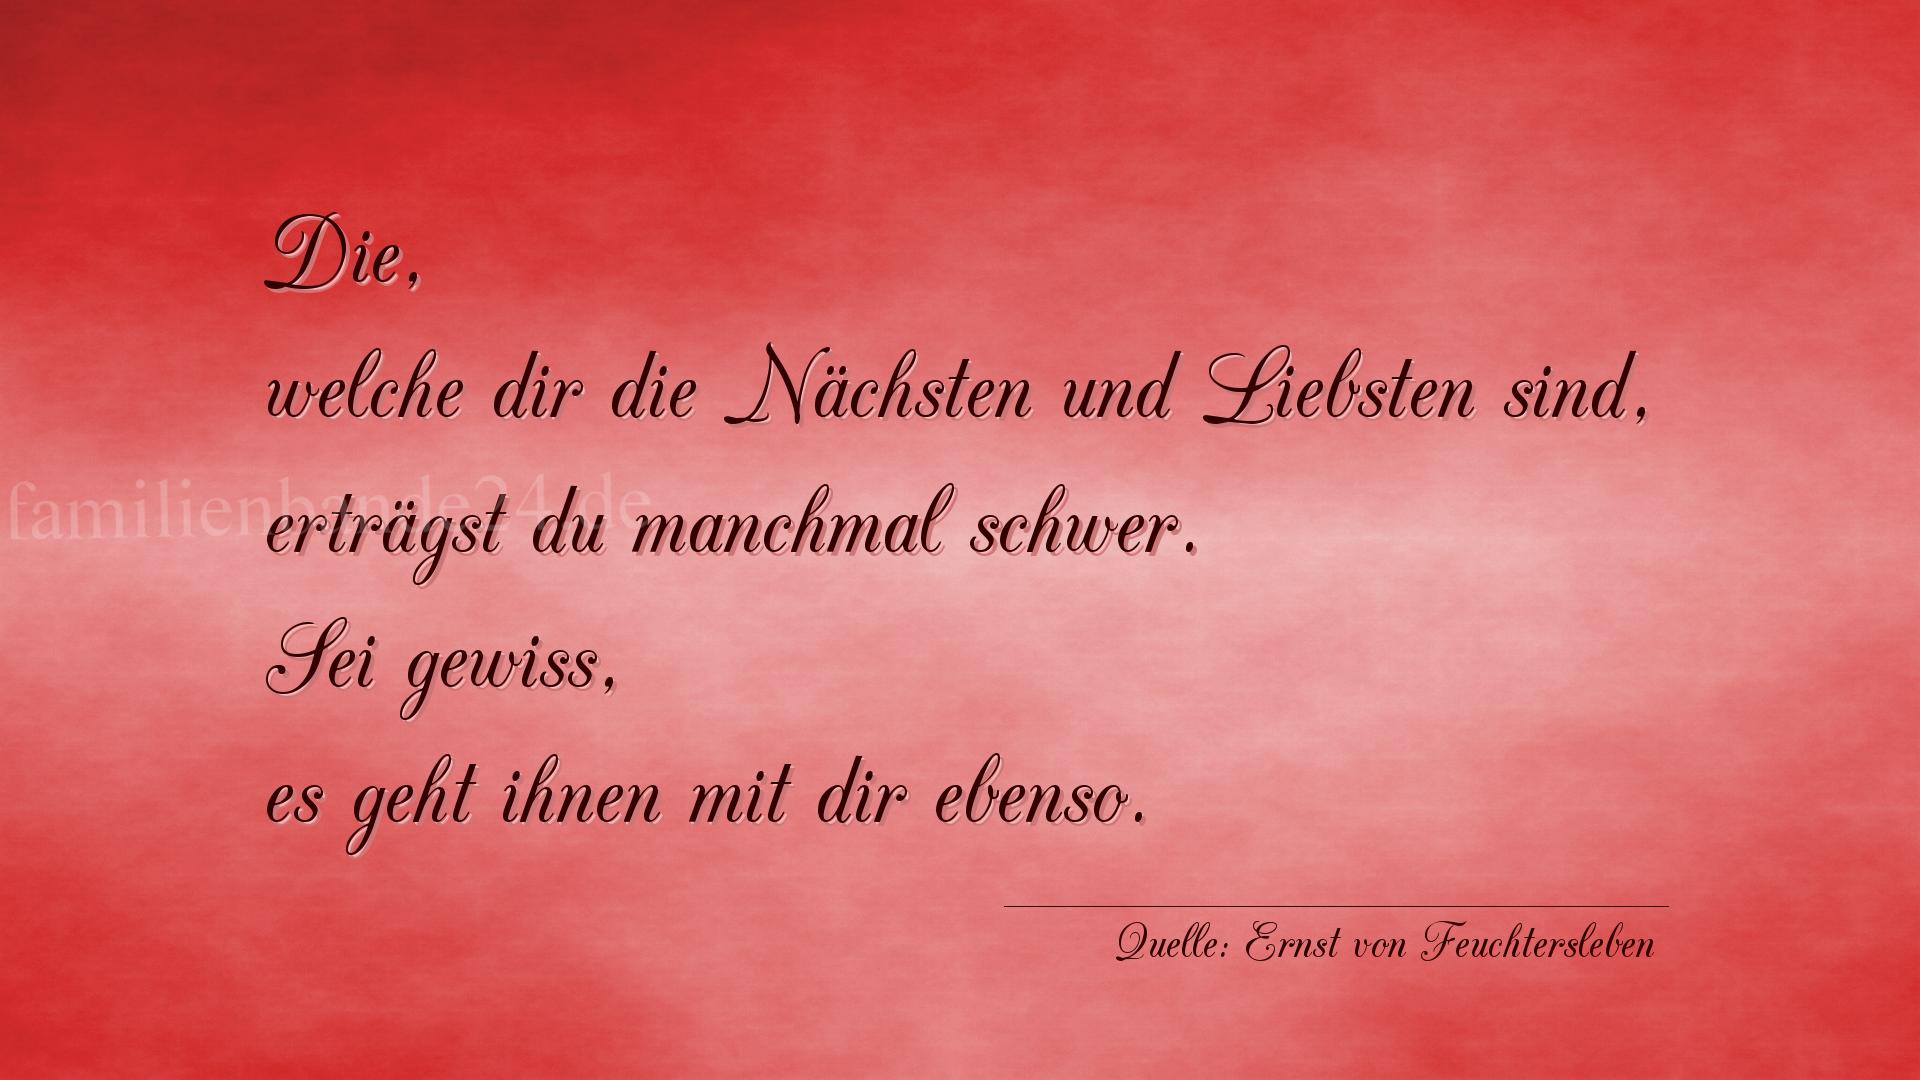 Vorschaubild  zu Spruch  No. 362  (von Ernst von Feuchtersleben)